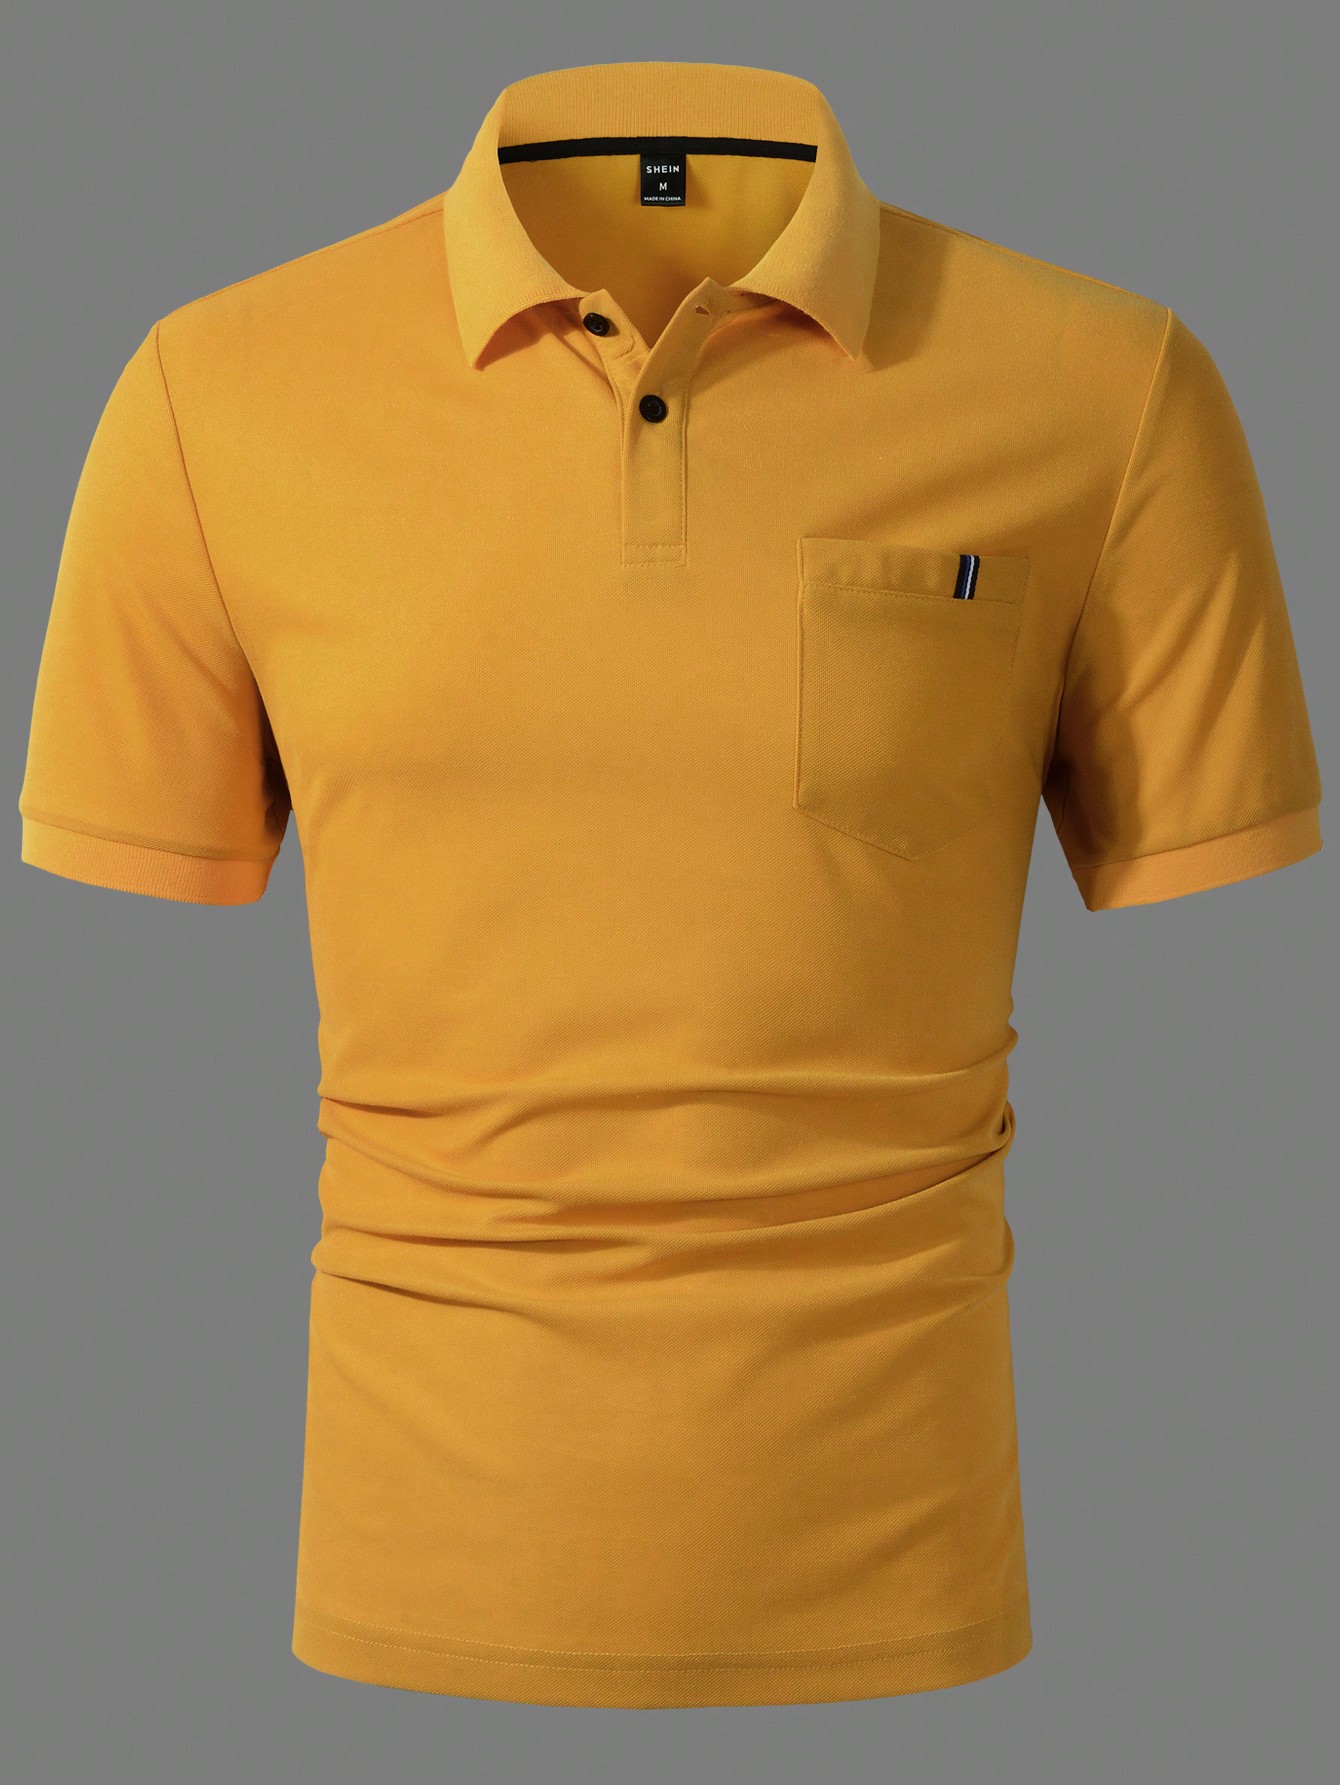 Мужская однотонная рубашка-поло с короткими рукавами Manfinity Homme, желтый